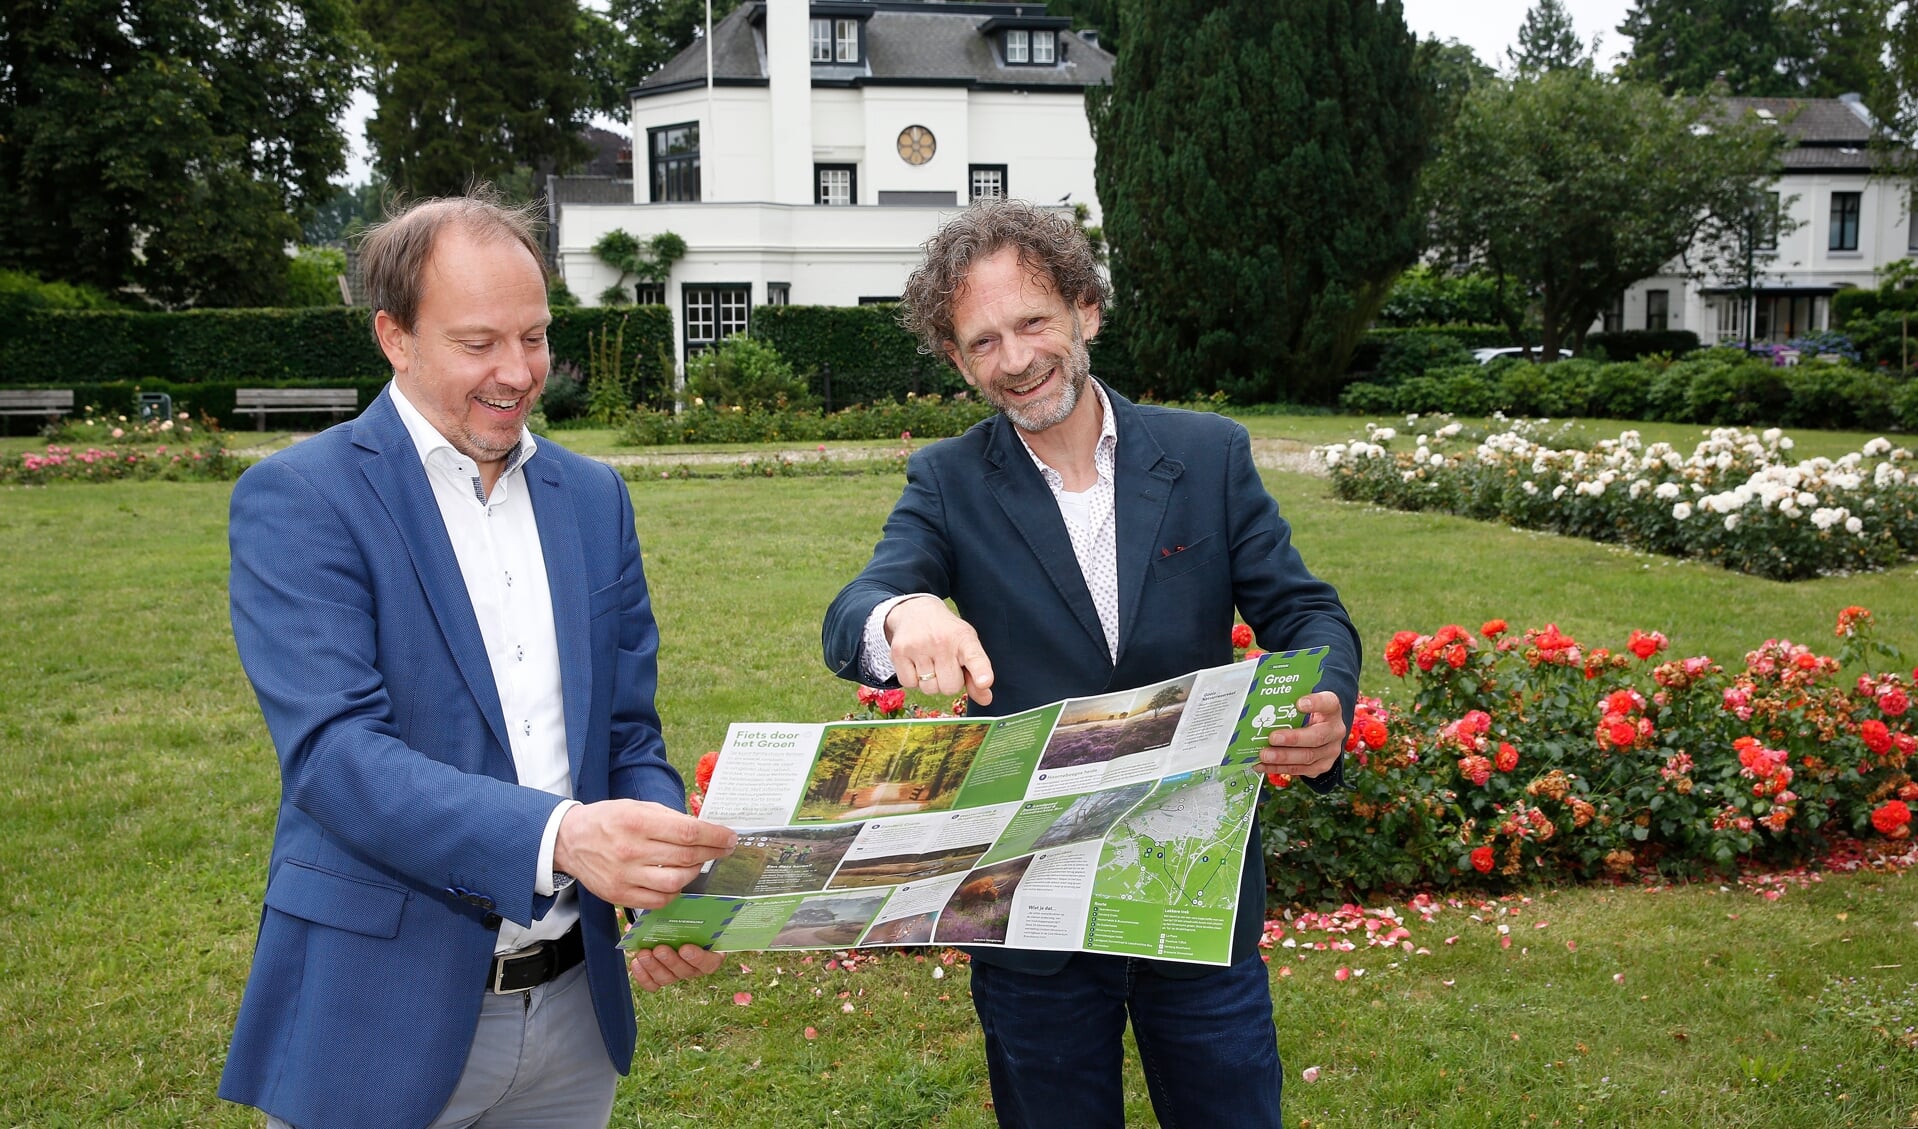 Directeur Jeroen Kreijkamp van Hilversum Marketing wandelt samen met wethouder Bart Heller (Duurzaamheid) een stukje van de Groen route .